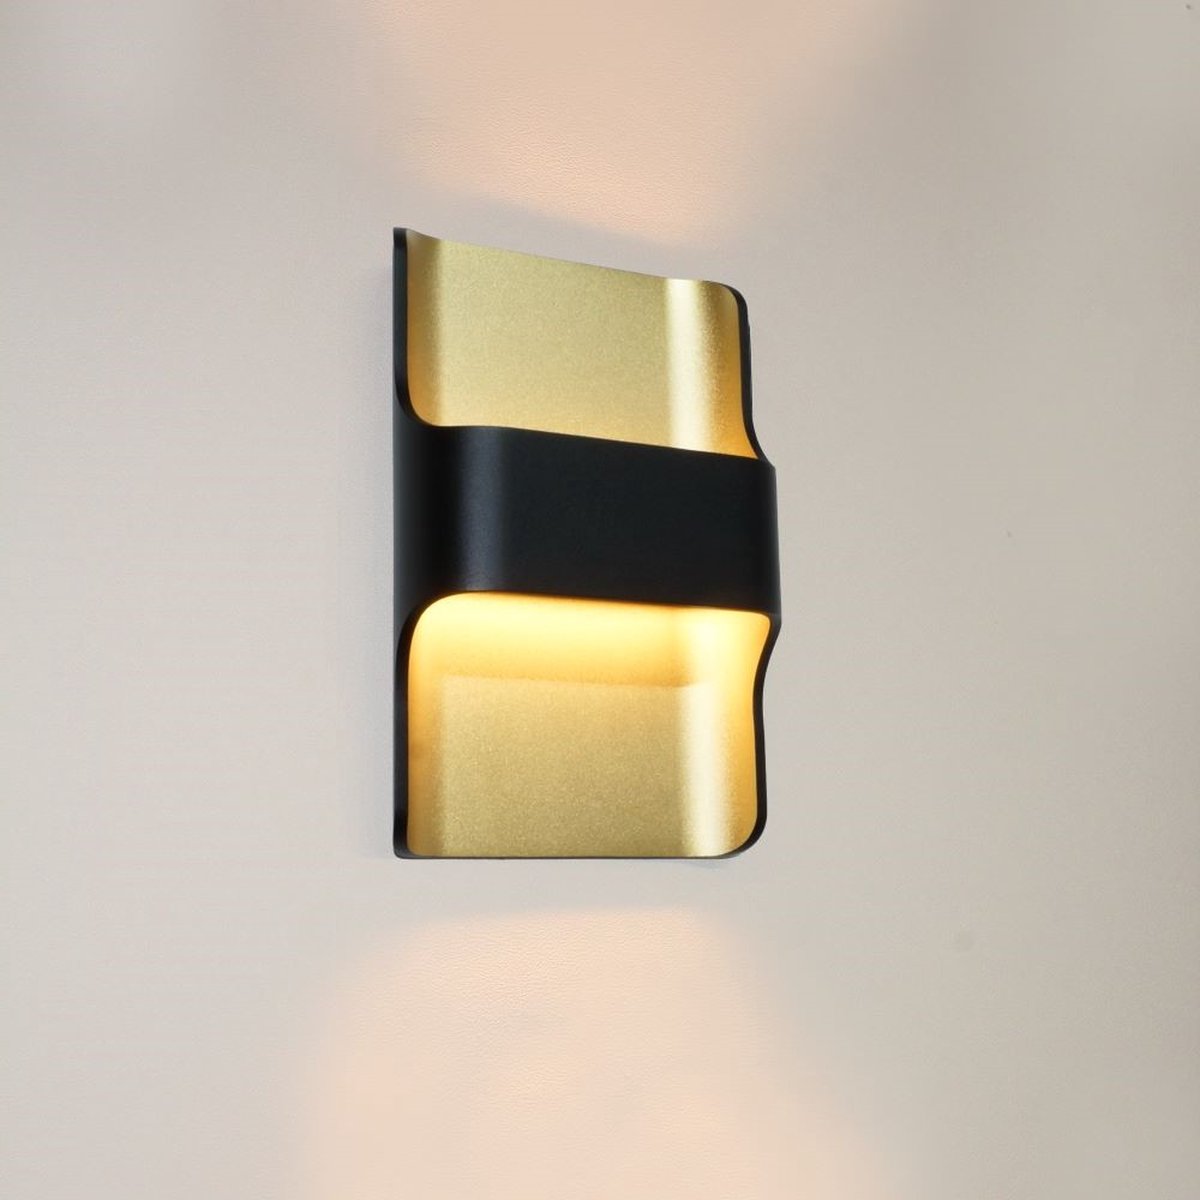 Wandlamp Dallas Zwart/Mat Goud - hoogte 24cm - LED 2x8W 2700K 2x720lm - IP54 - Dimbaar > wandlamp binnen zwart goud | wandlamp buiten zwart goud | wandlamp zwart goud | buitenlamp zwart goud | muurlamp zwart goud | design lamp zwart goud